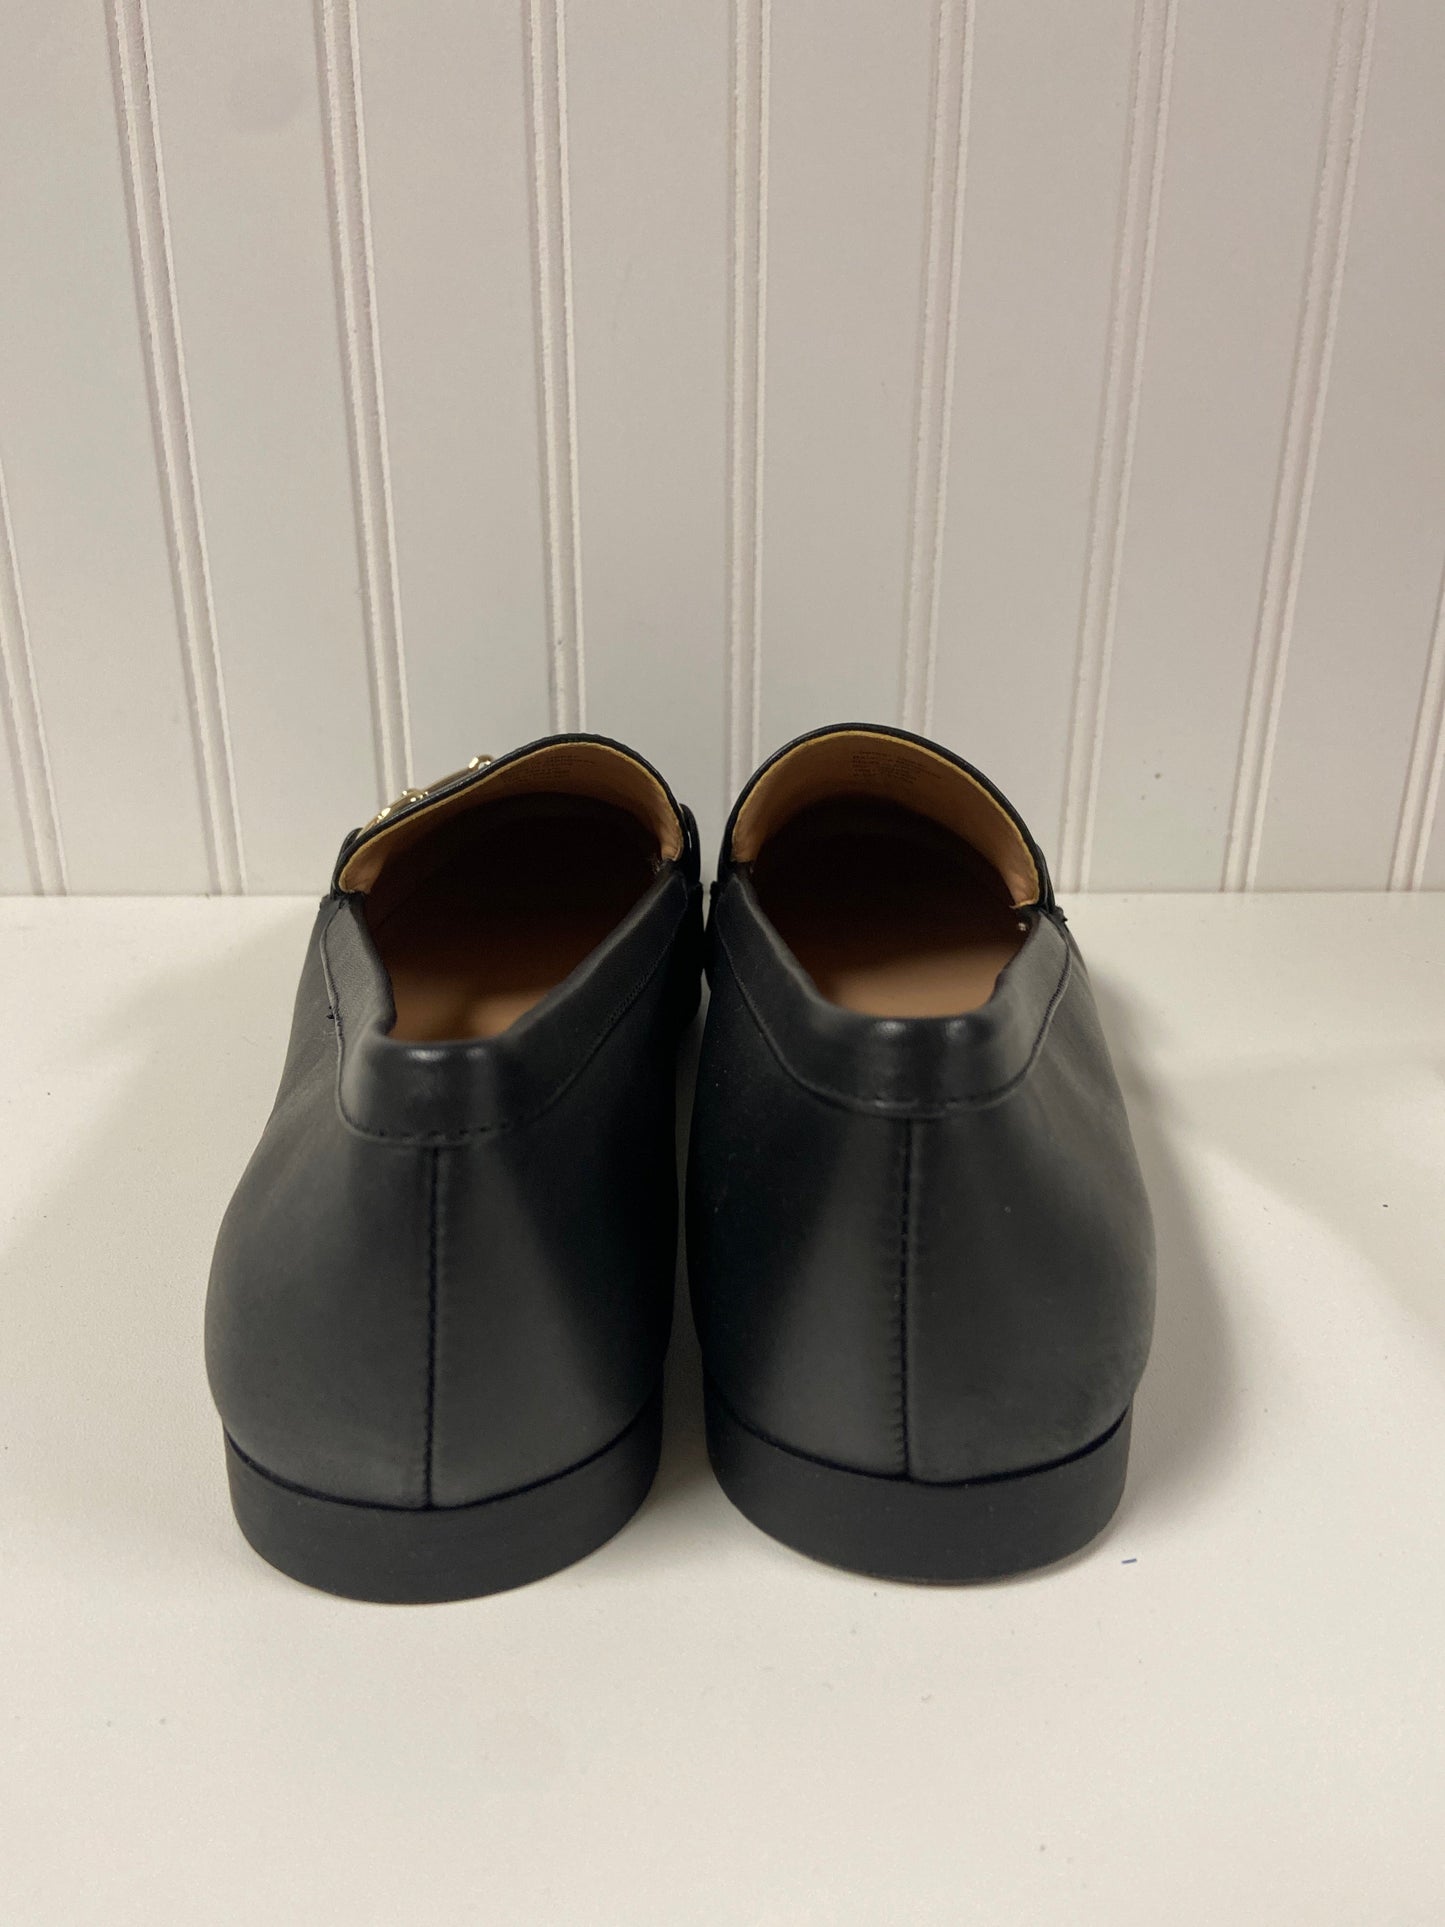 Black Shoes Flats Inc, Size 9.5